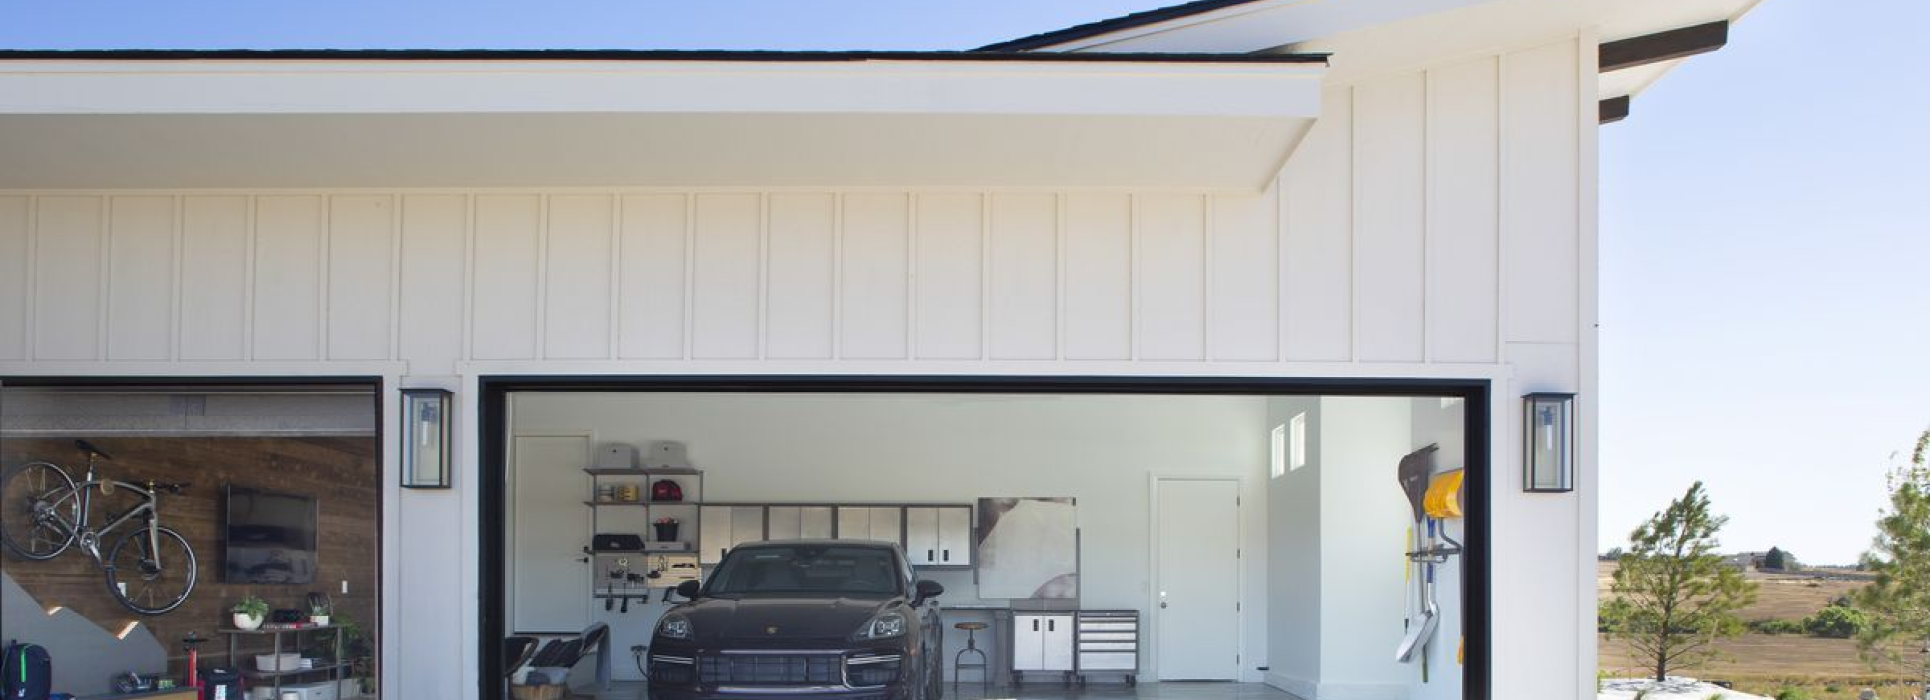 Idee di illuminazione del garage per 2023 - Moderne luci del garage